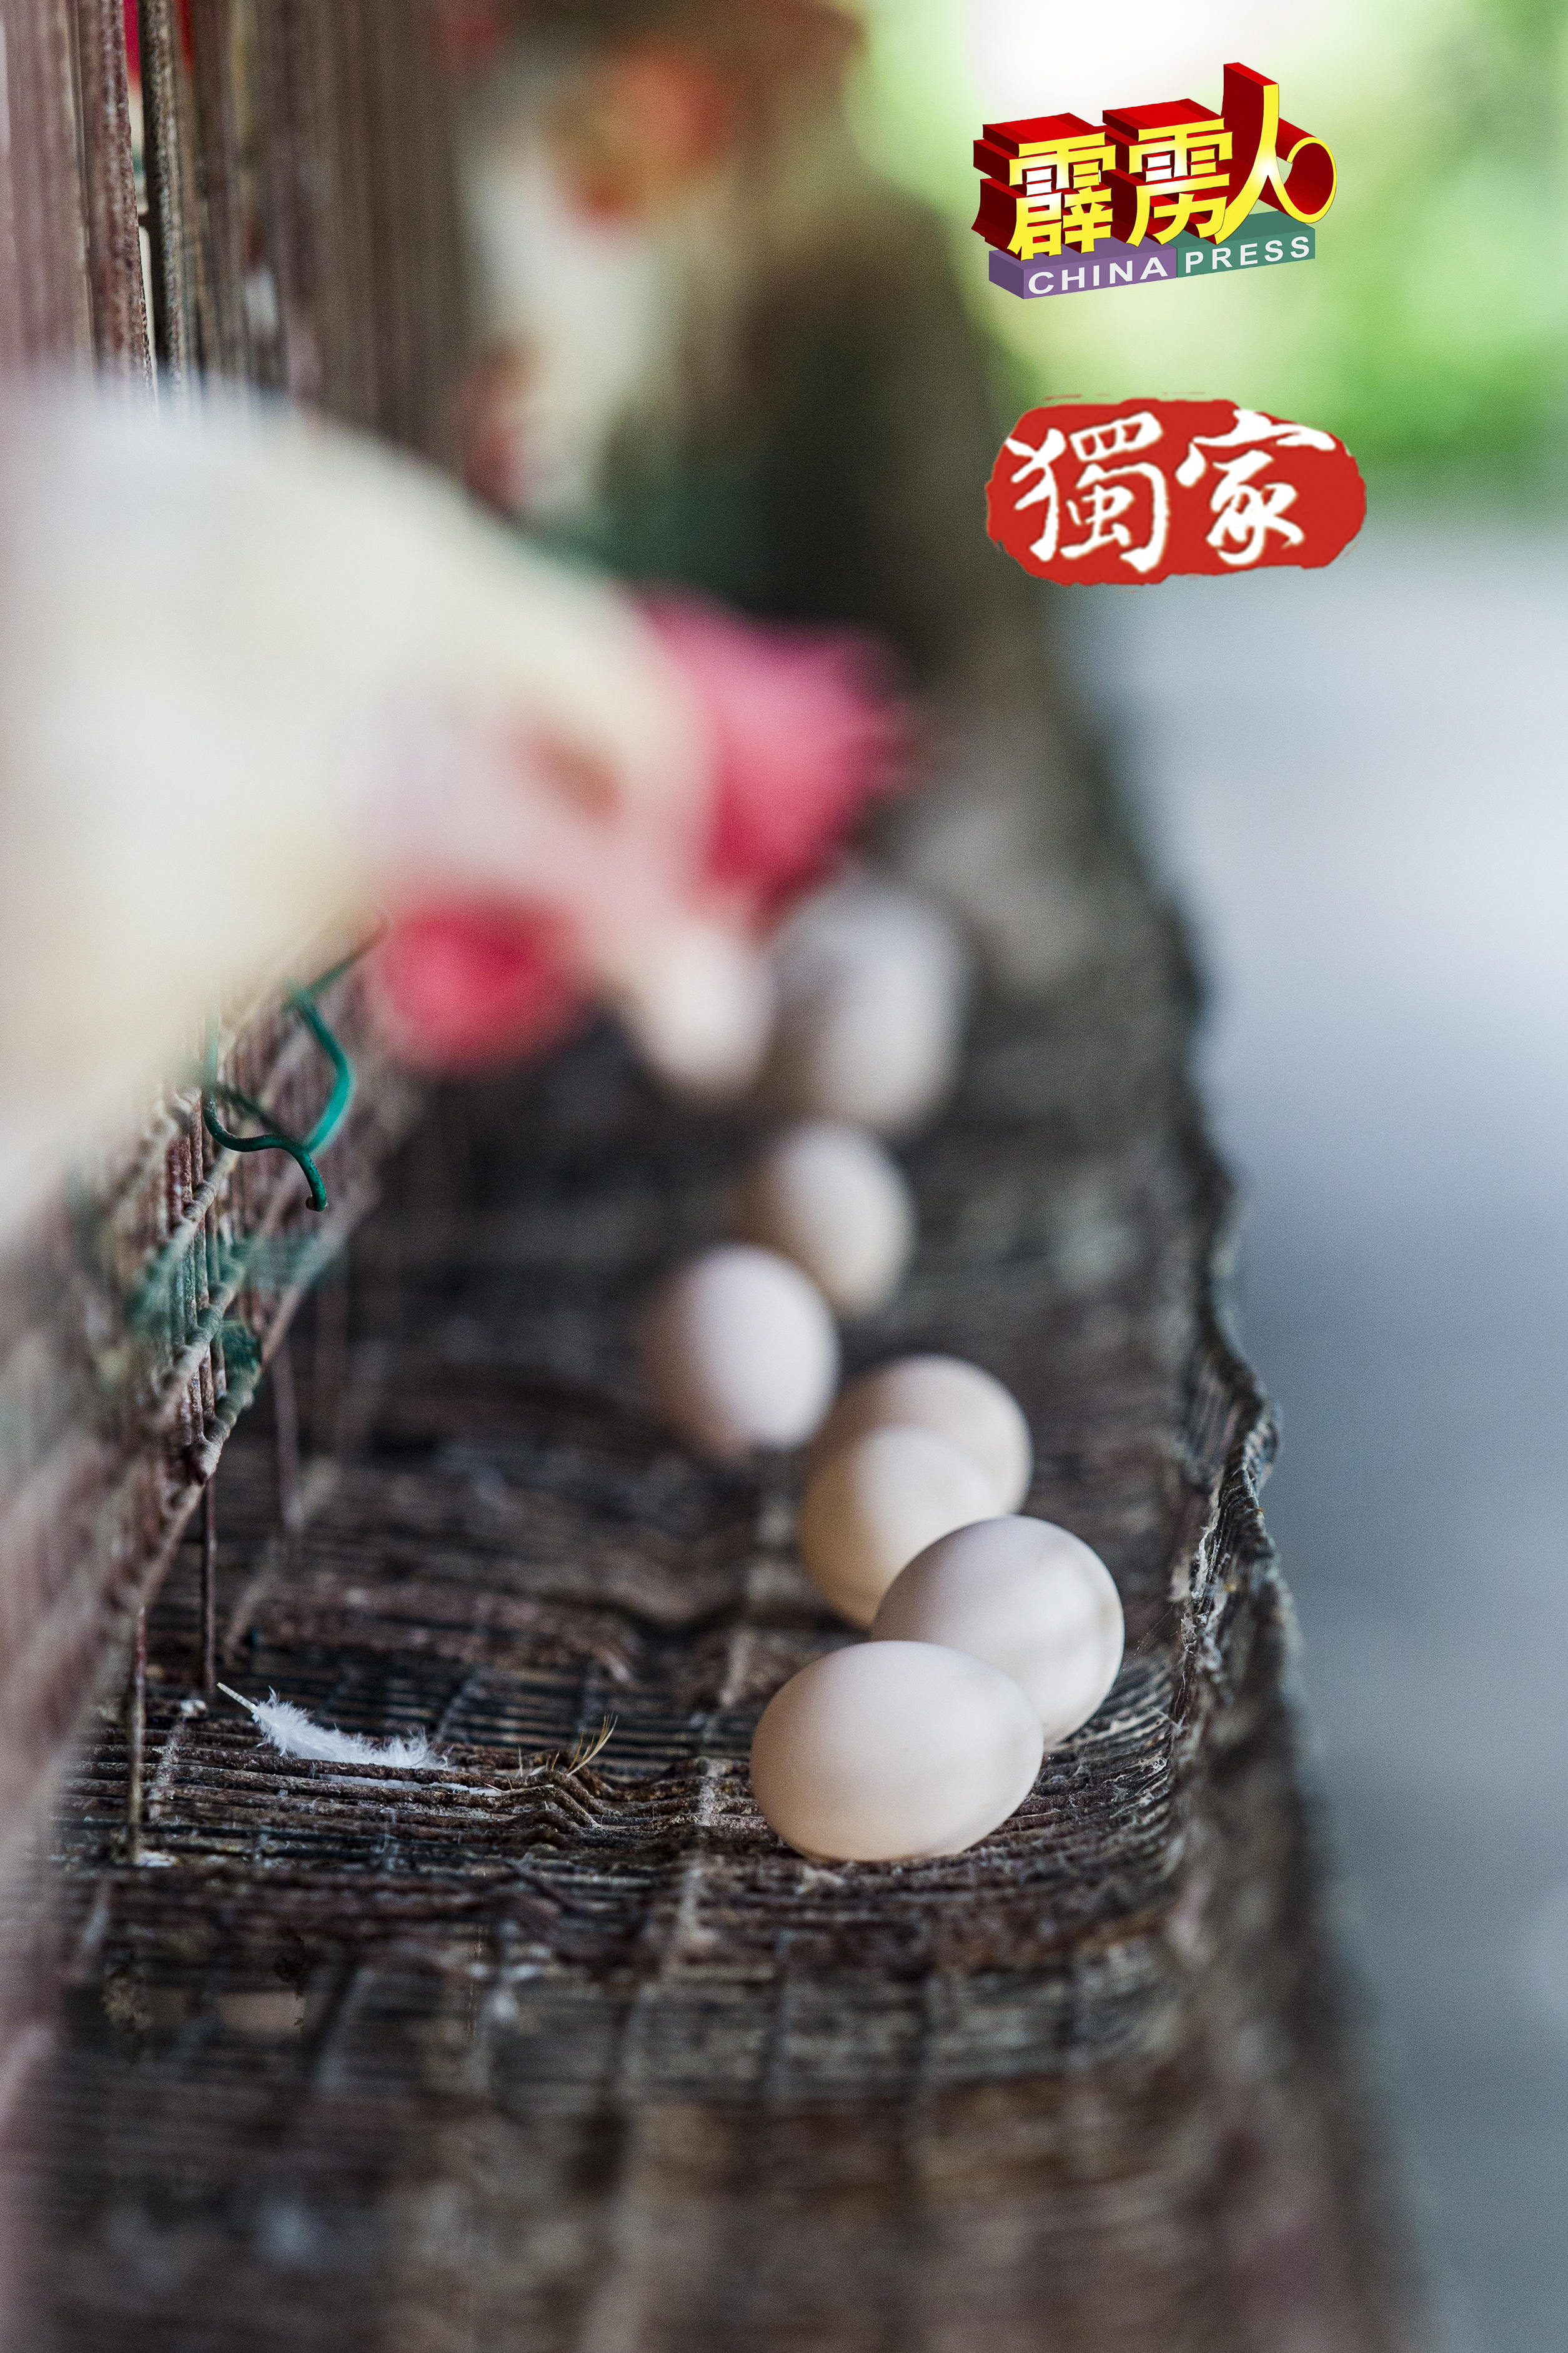 白壳鸡蛋目前的每粒批发价在近60仙至70仙之间， 比红壳鸡蛋顶价要高。